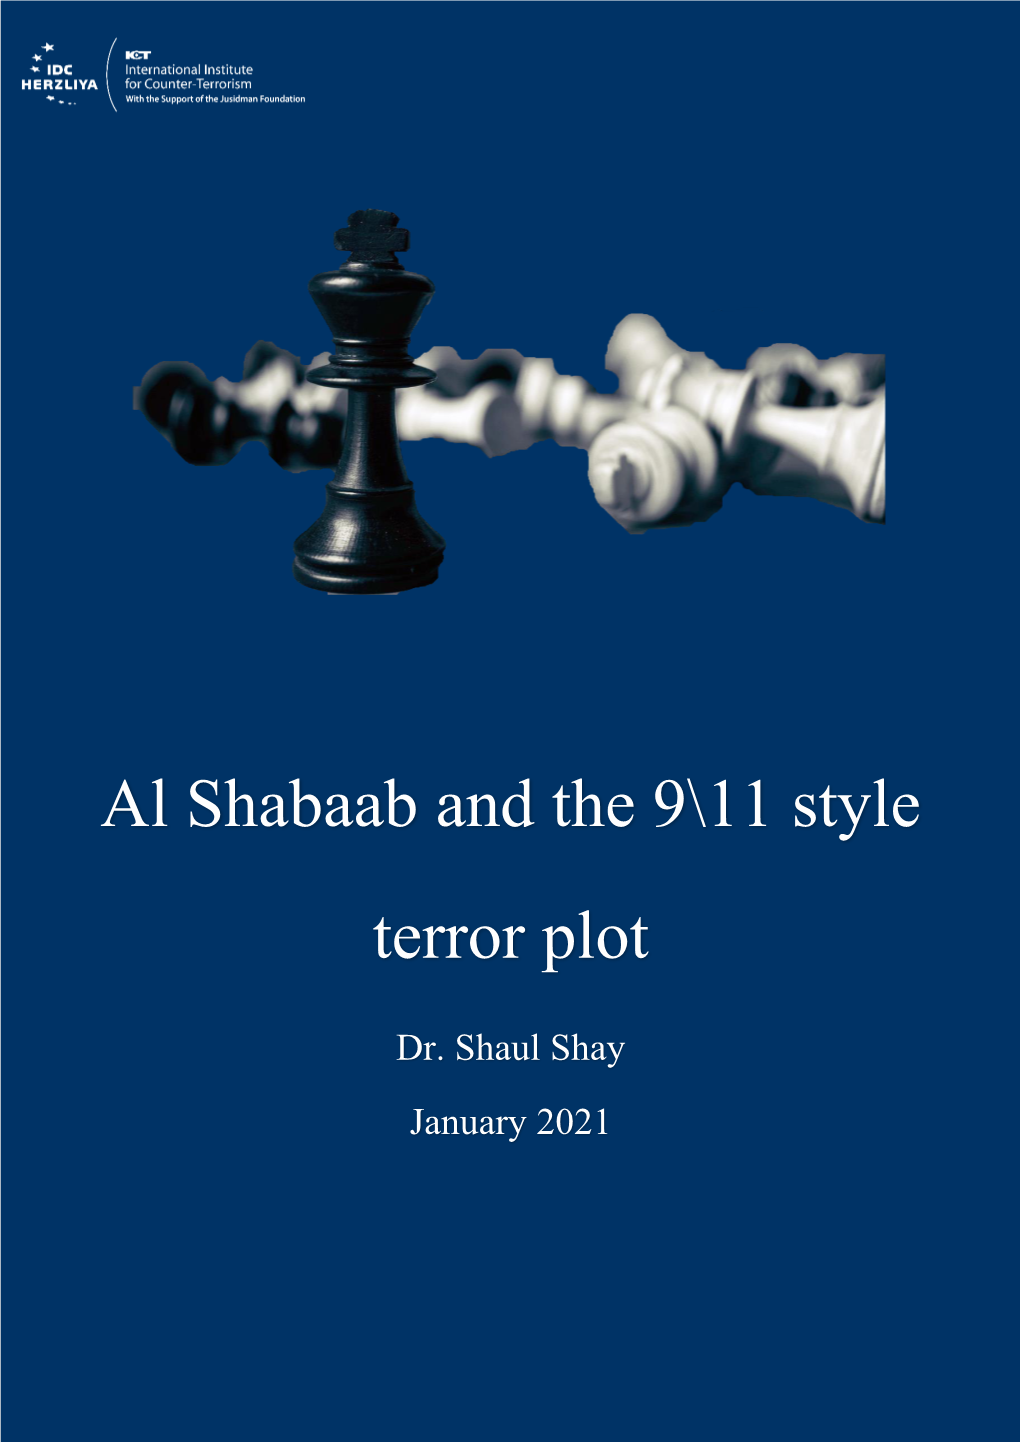 Al Shabaab and the 9\11 Style Terror Plot